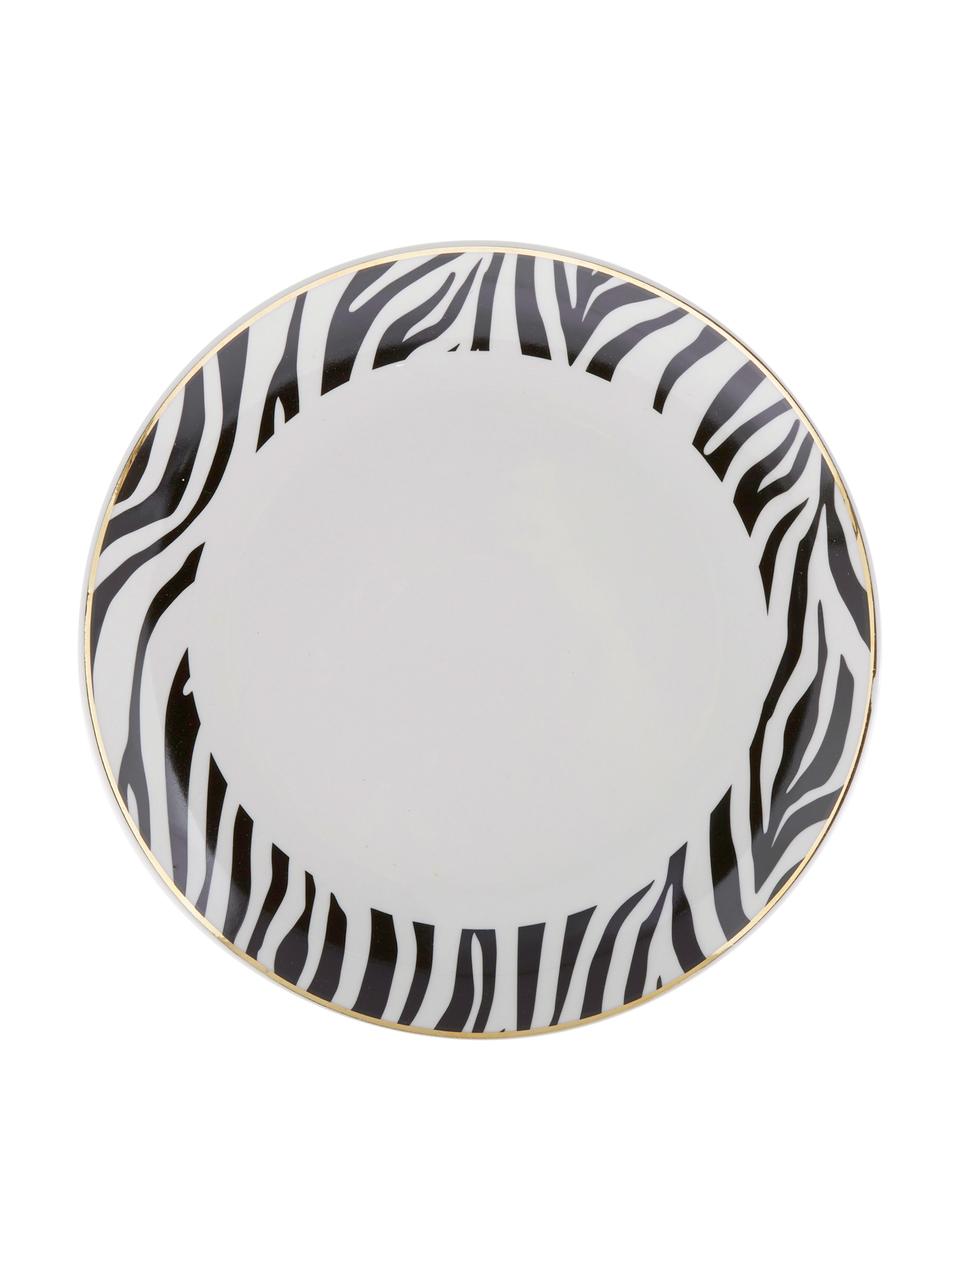 Komplet talerzy deserowych Wild Jungle, 4 elem., Porcelana, Czarny, biały, Ø 19 cm